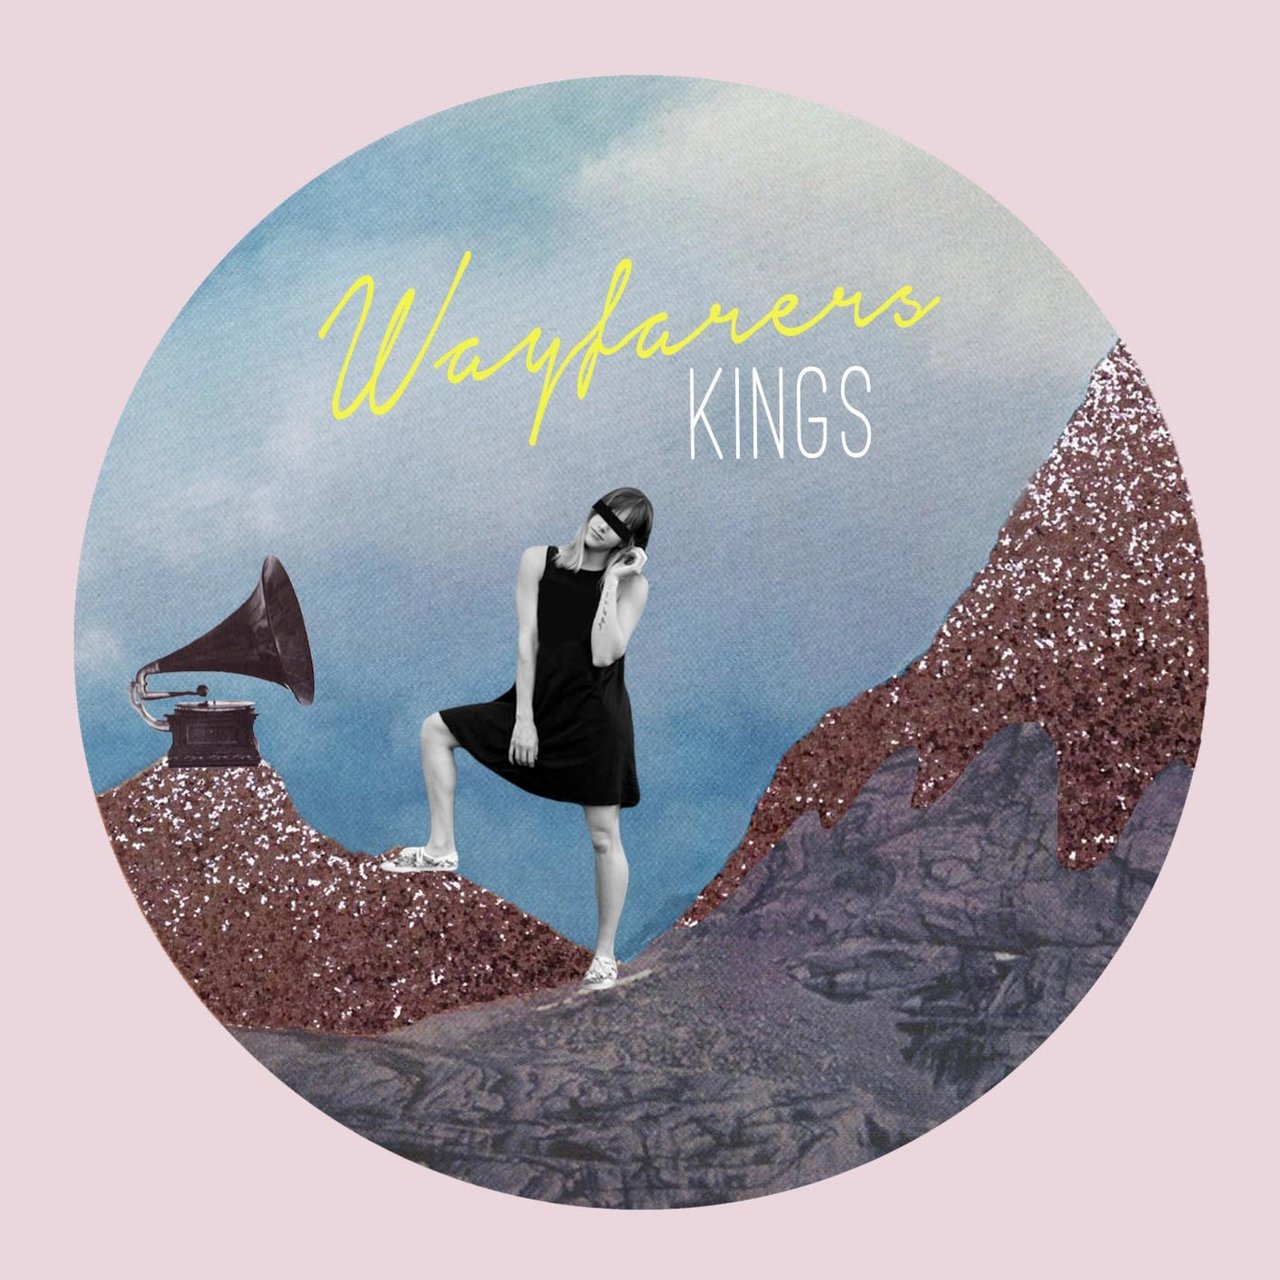 Wayfarers — Kings cover artwork